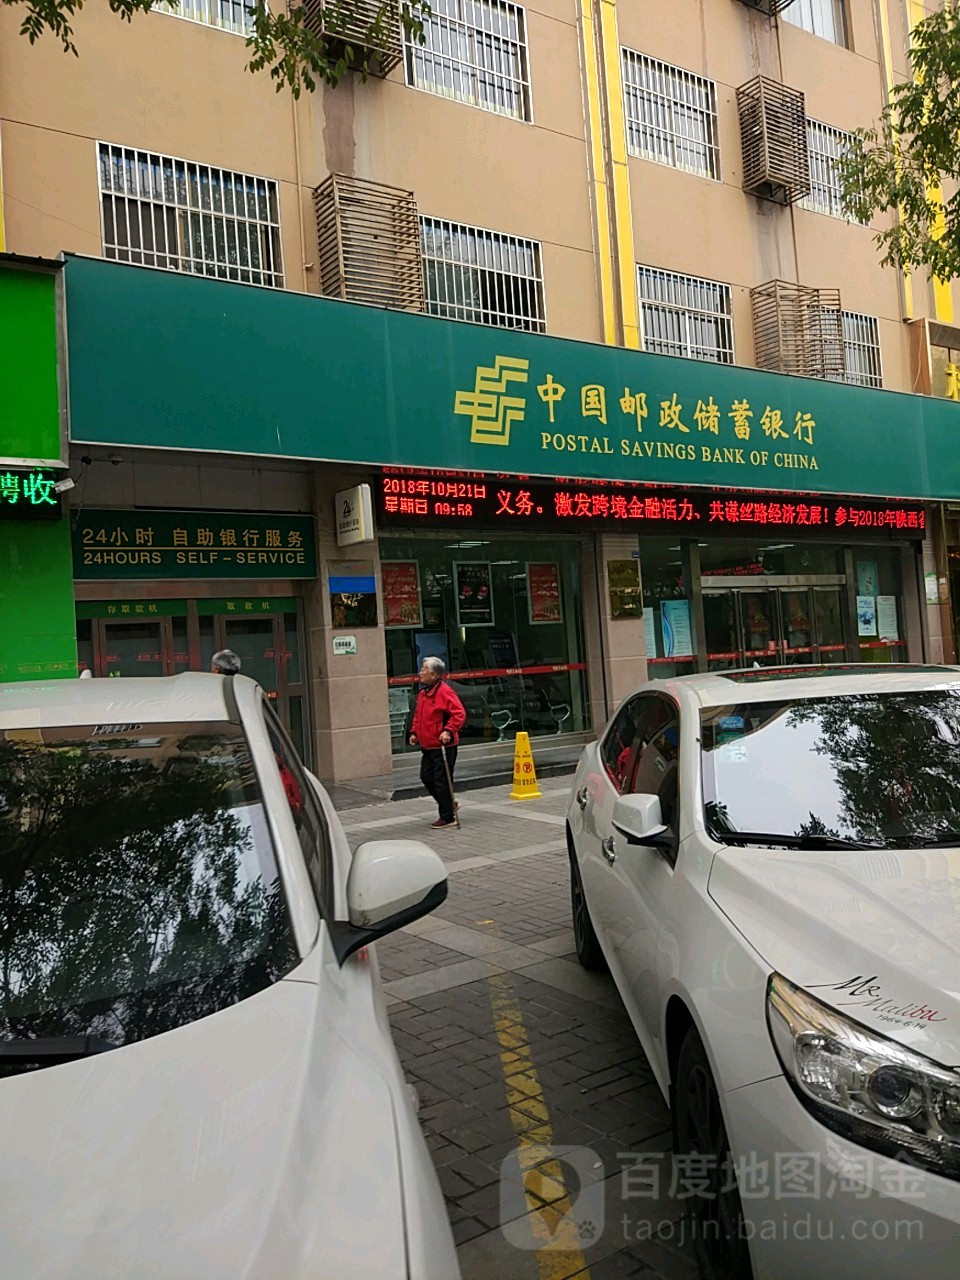 中國郵政儲蓄銀行ATM 24小時自助銀行